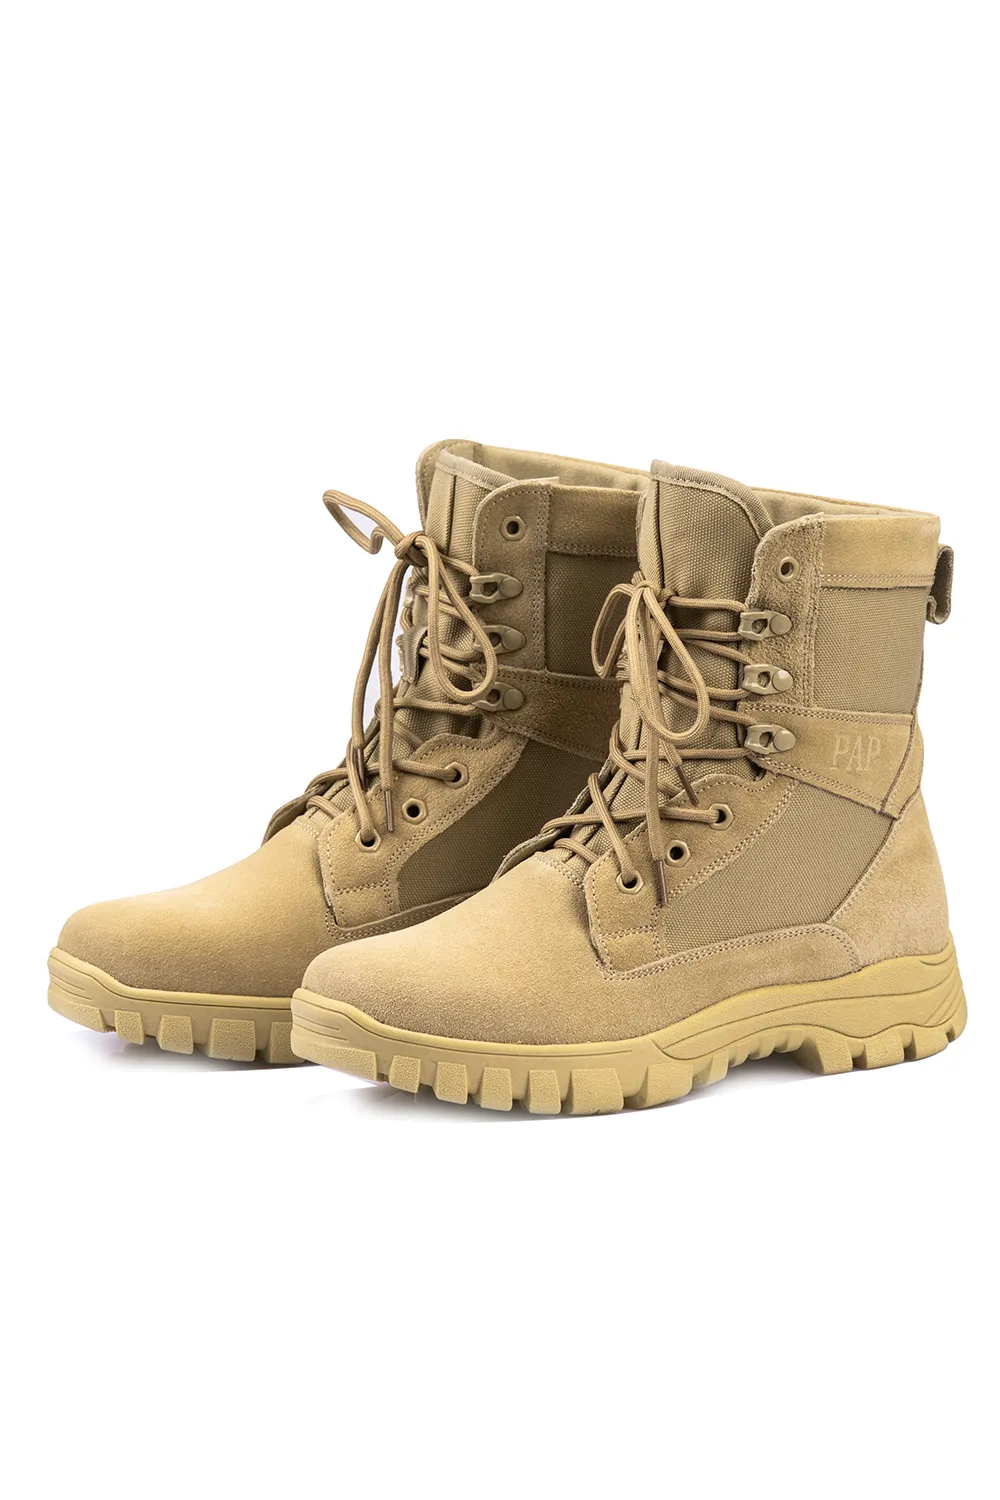 EU Stock 2020 Homens botas de deserto Militar tático botas impermeável ao ar livre Caminhadas Sapatos Homens Sneakers antiderrapante Sports botas de combate Um Par